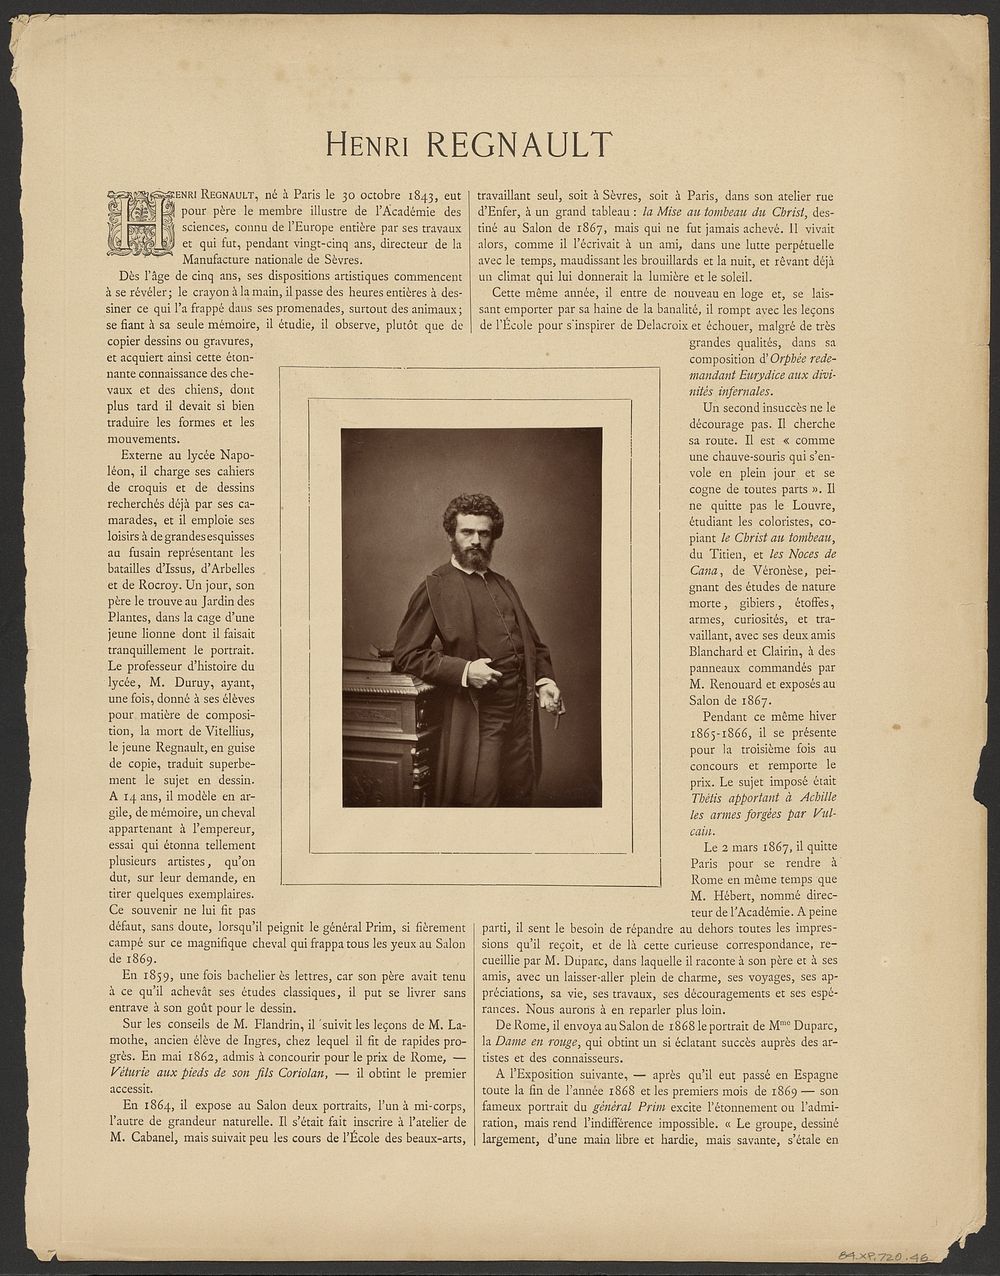 Portrait of Henri Regnault